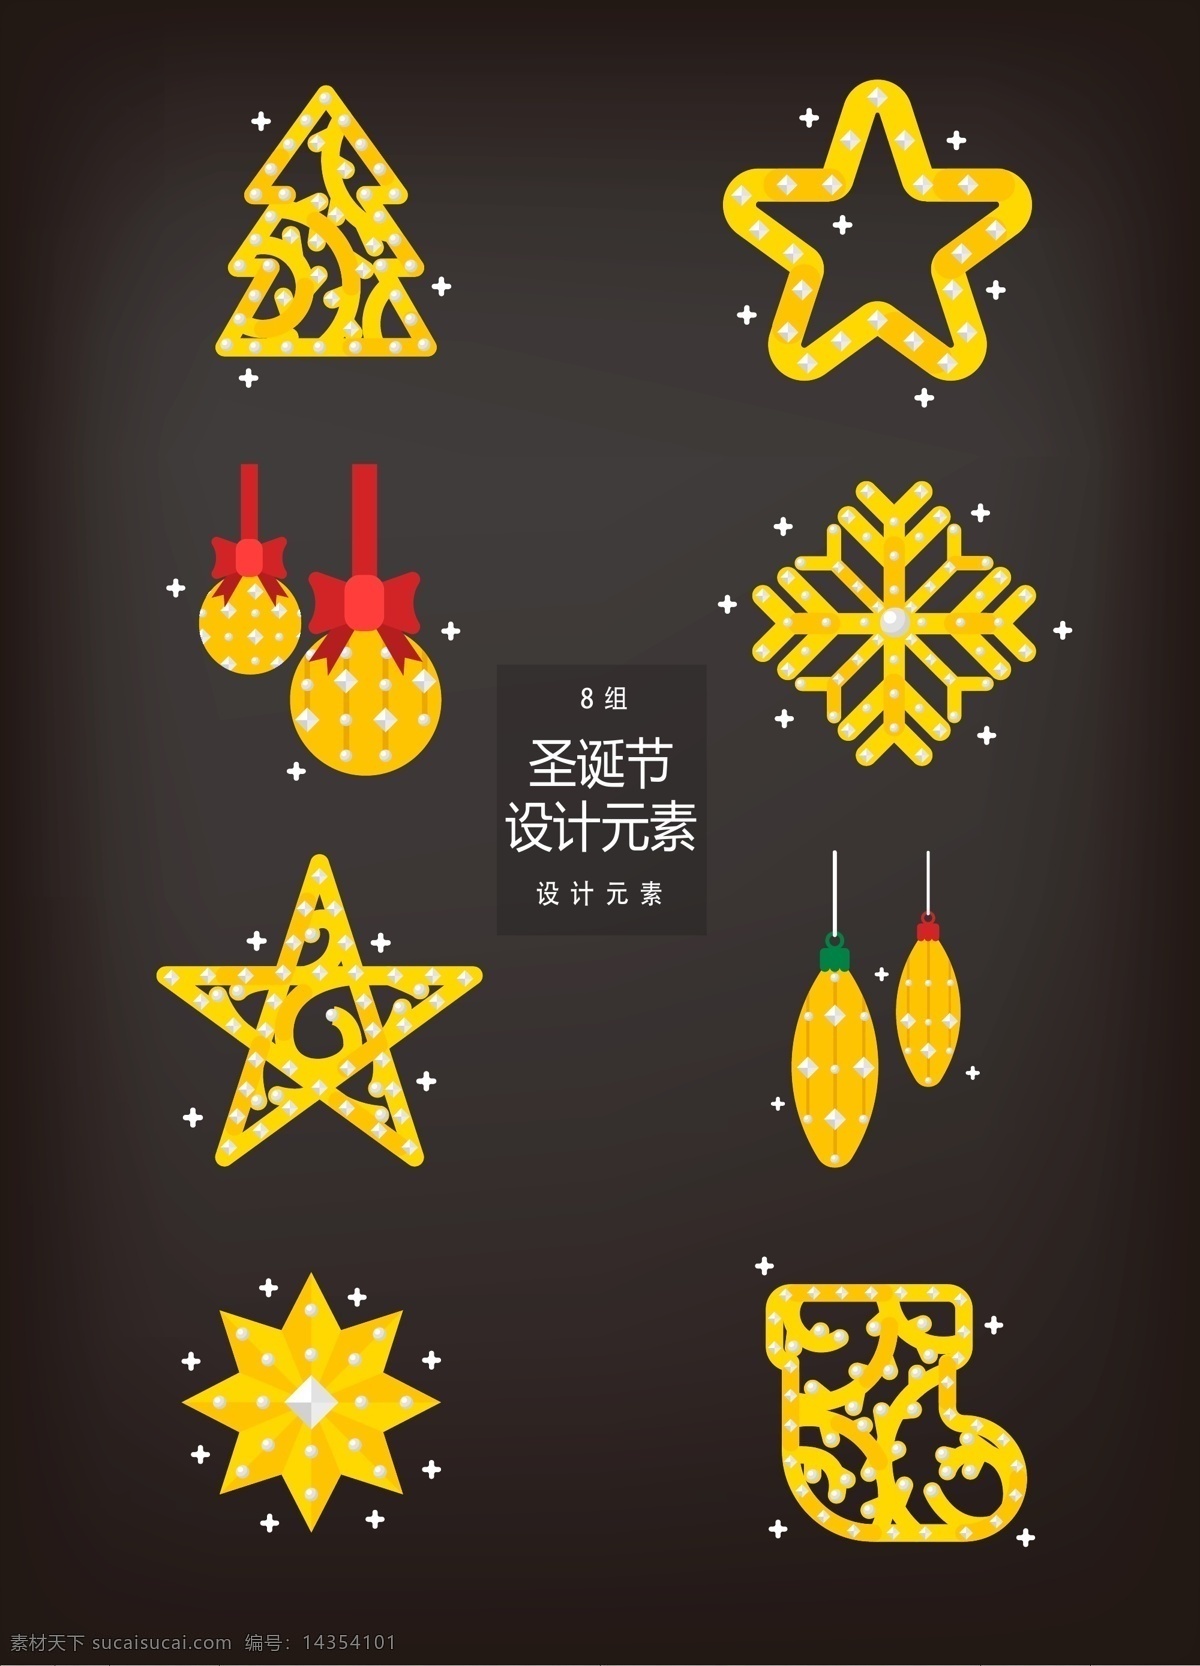 金色 圣诞节 装饰设计 元素 圣诞树 星星 雪花 圣诞 圣诞装饰 金色装饰 五角星 圣诞球 圣诞袜